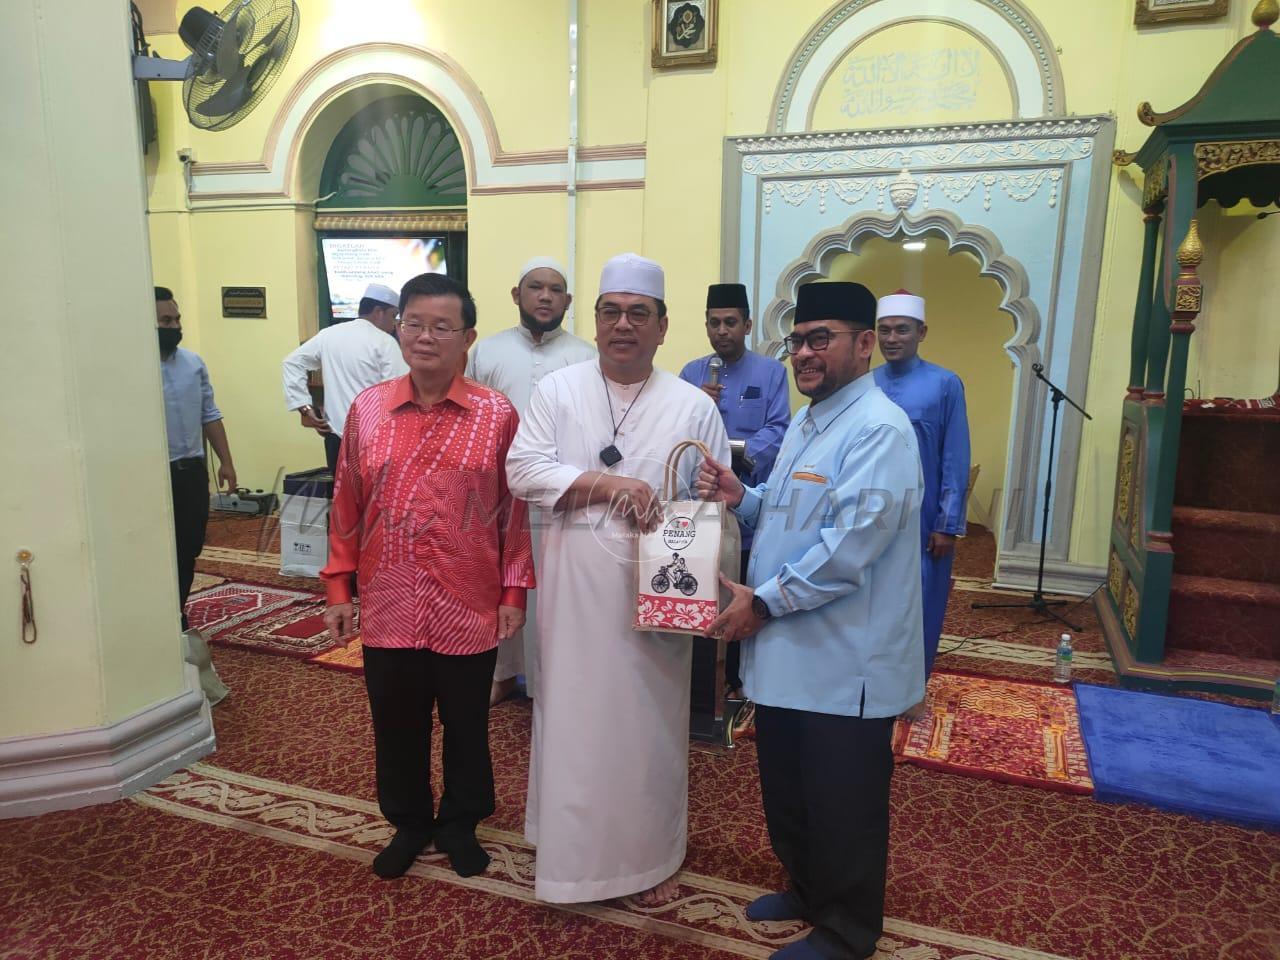 Sulaiman solat berjemaah di masjid bersejarah Pulau Pinang